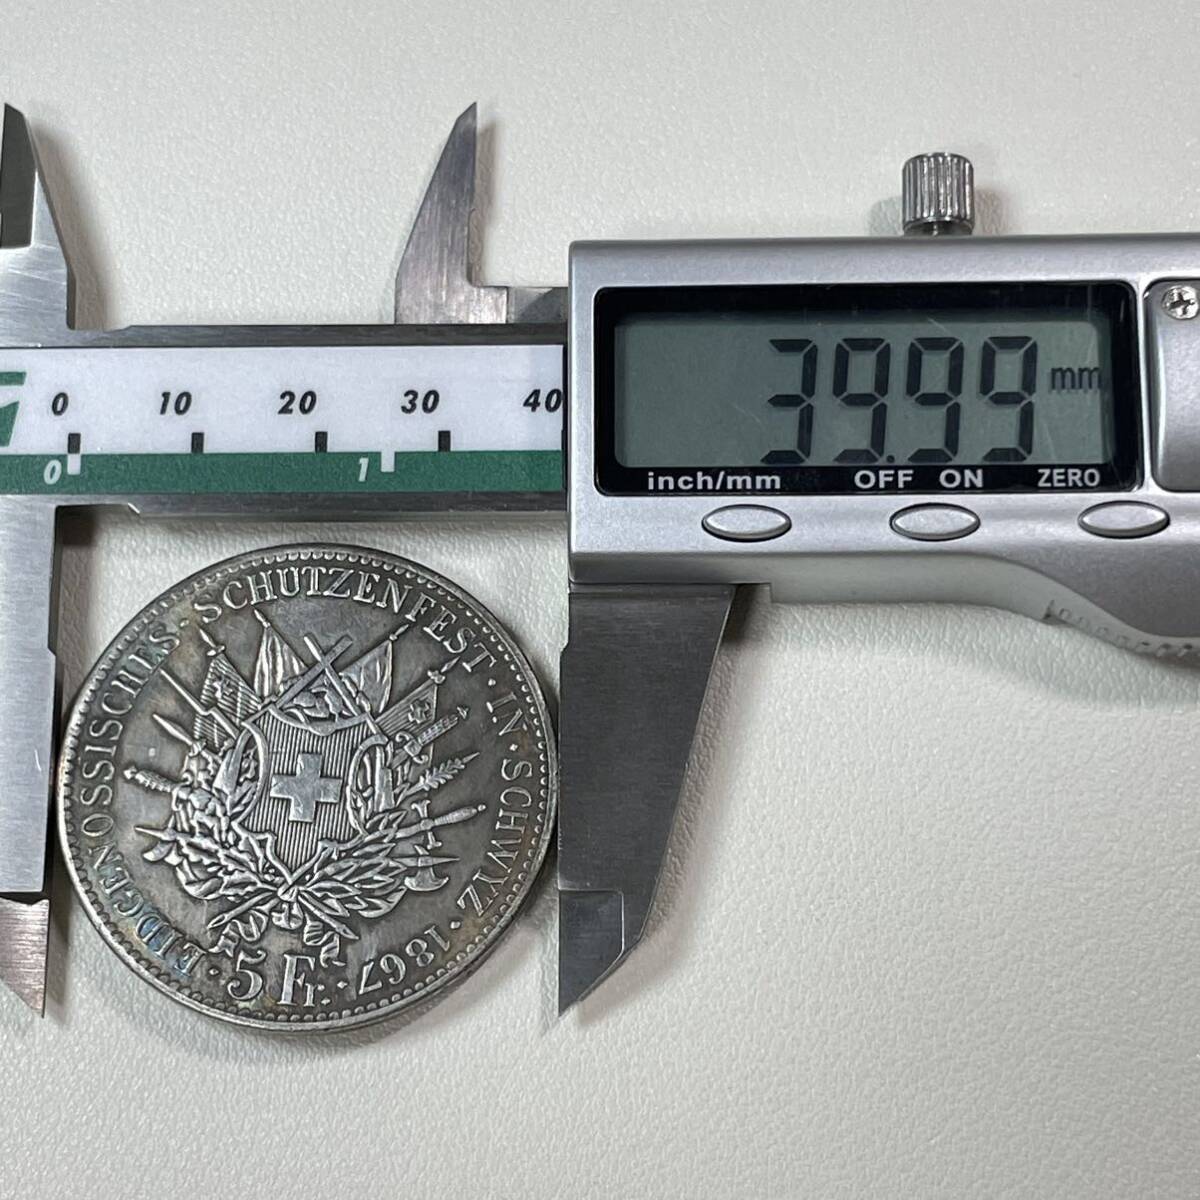 スイス 硬貨 古銭 シュヴィーツ州 1867年 5フランケン 州の花輪を守るライオン 国章 連邦射撃祭 コイン 重24.37g _画像6